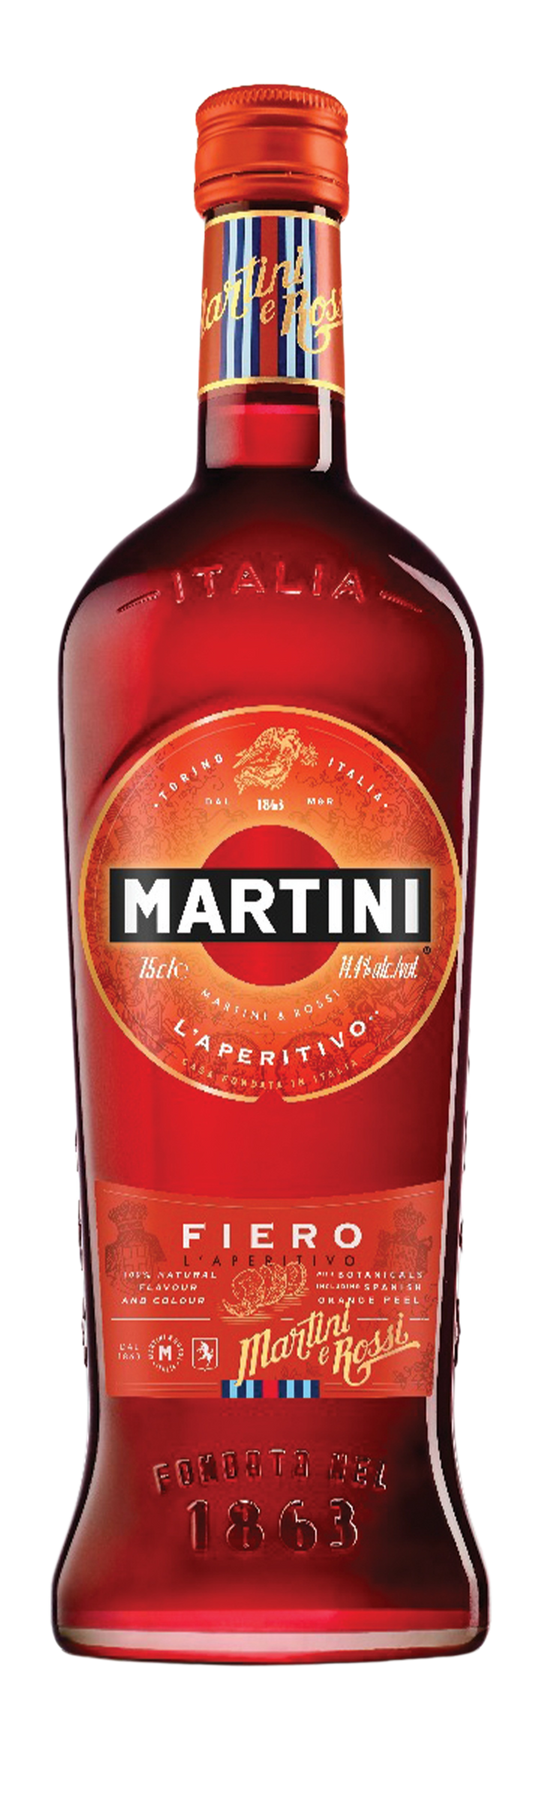 Martini Fiero 15% 75cl